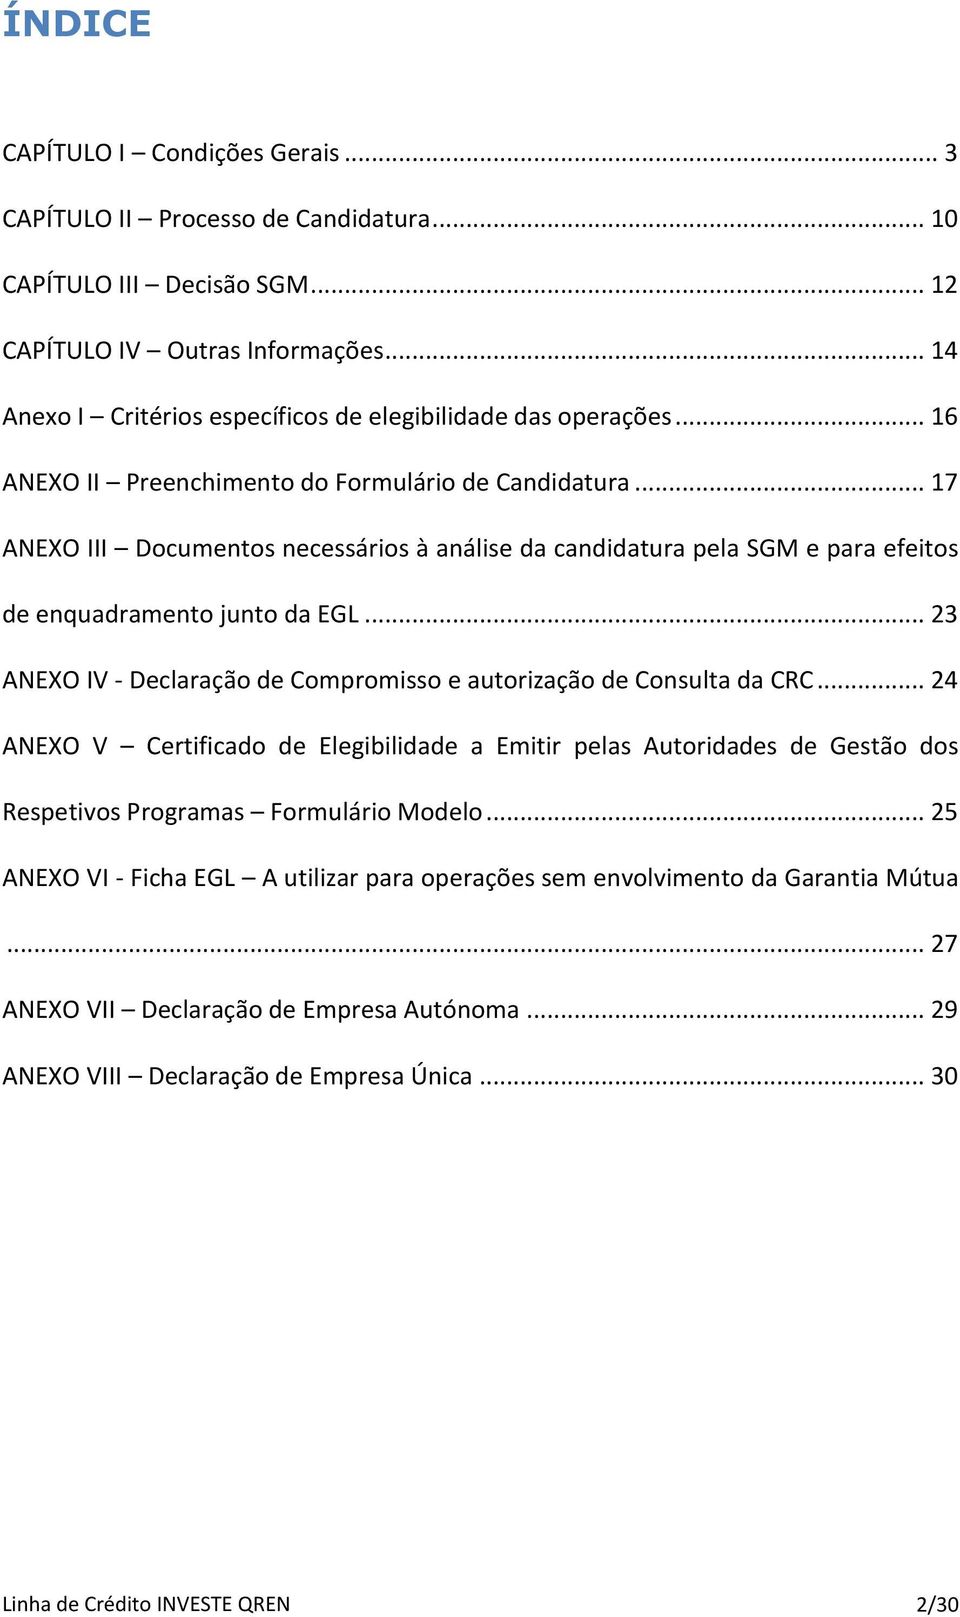 .. 17 ANEXO III Documentos necessários à análise da candidatura pela SGM e para efeitos de enquadramento junto da EGL... 23 ANEXO IV - Declaração de Compromisso e autorização de Consulta da CRC.